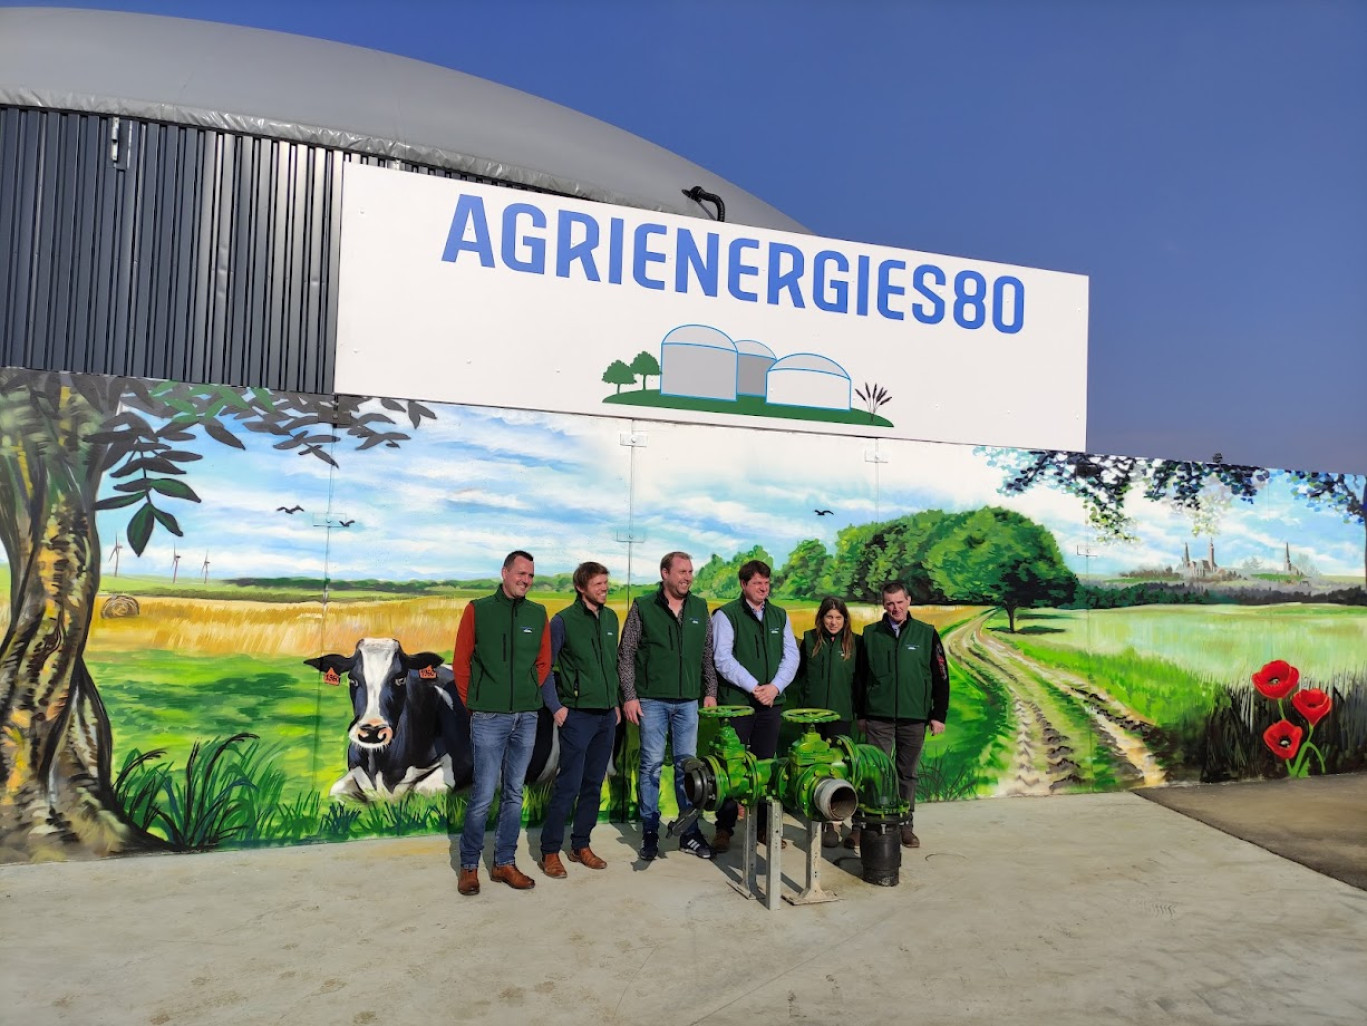 Hubert Dehaspe, Florian Dreue, Arnaud Gellynck, Sébastien Lhermitte, Céline et Frédéric Mahieus devant l’entrée du site de méthanisation agricole.